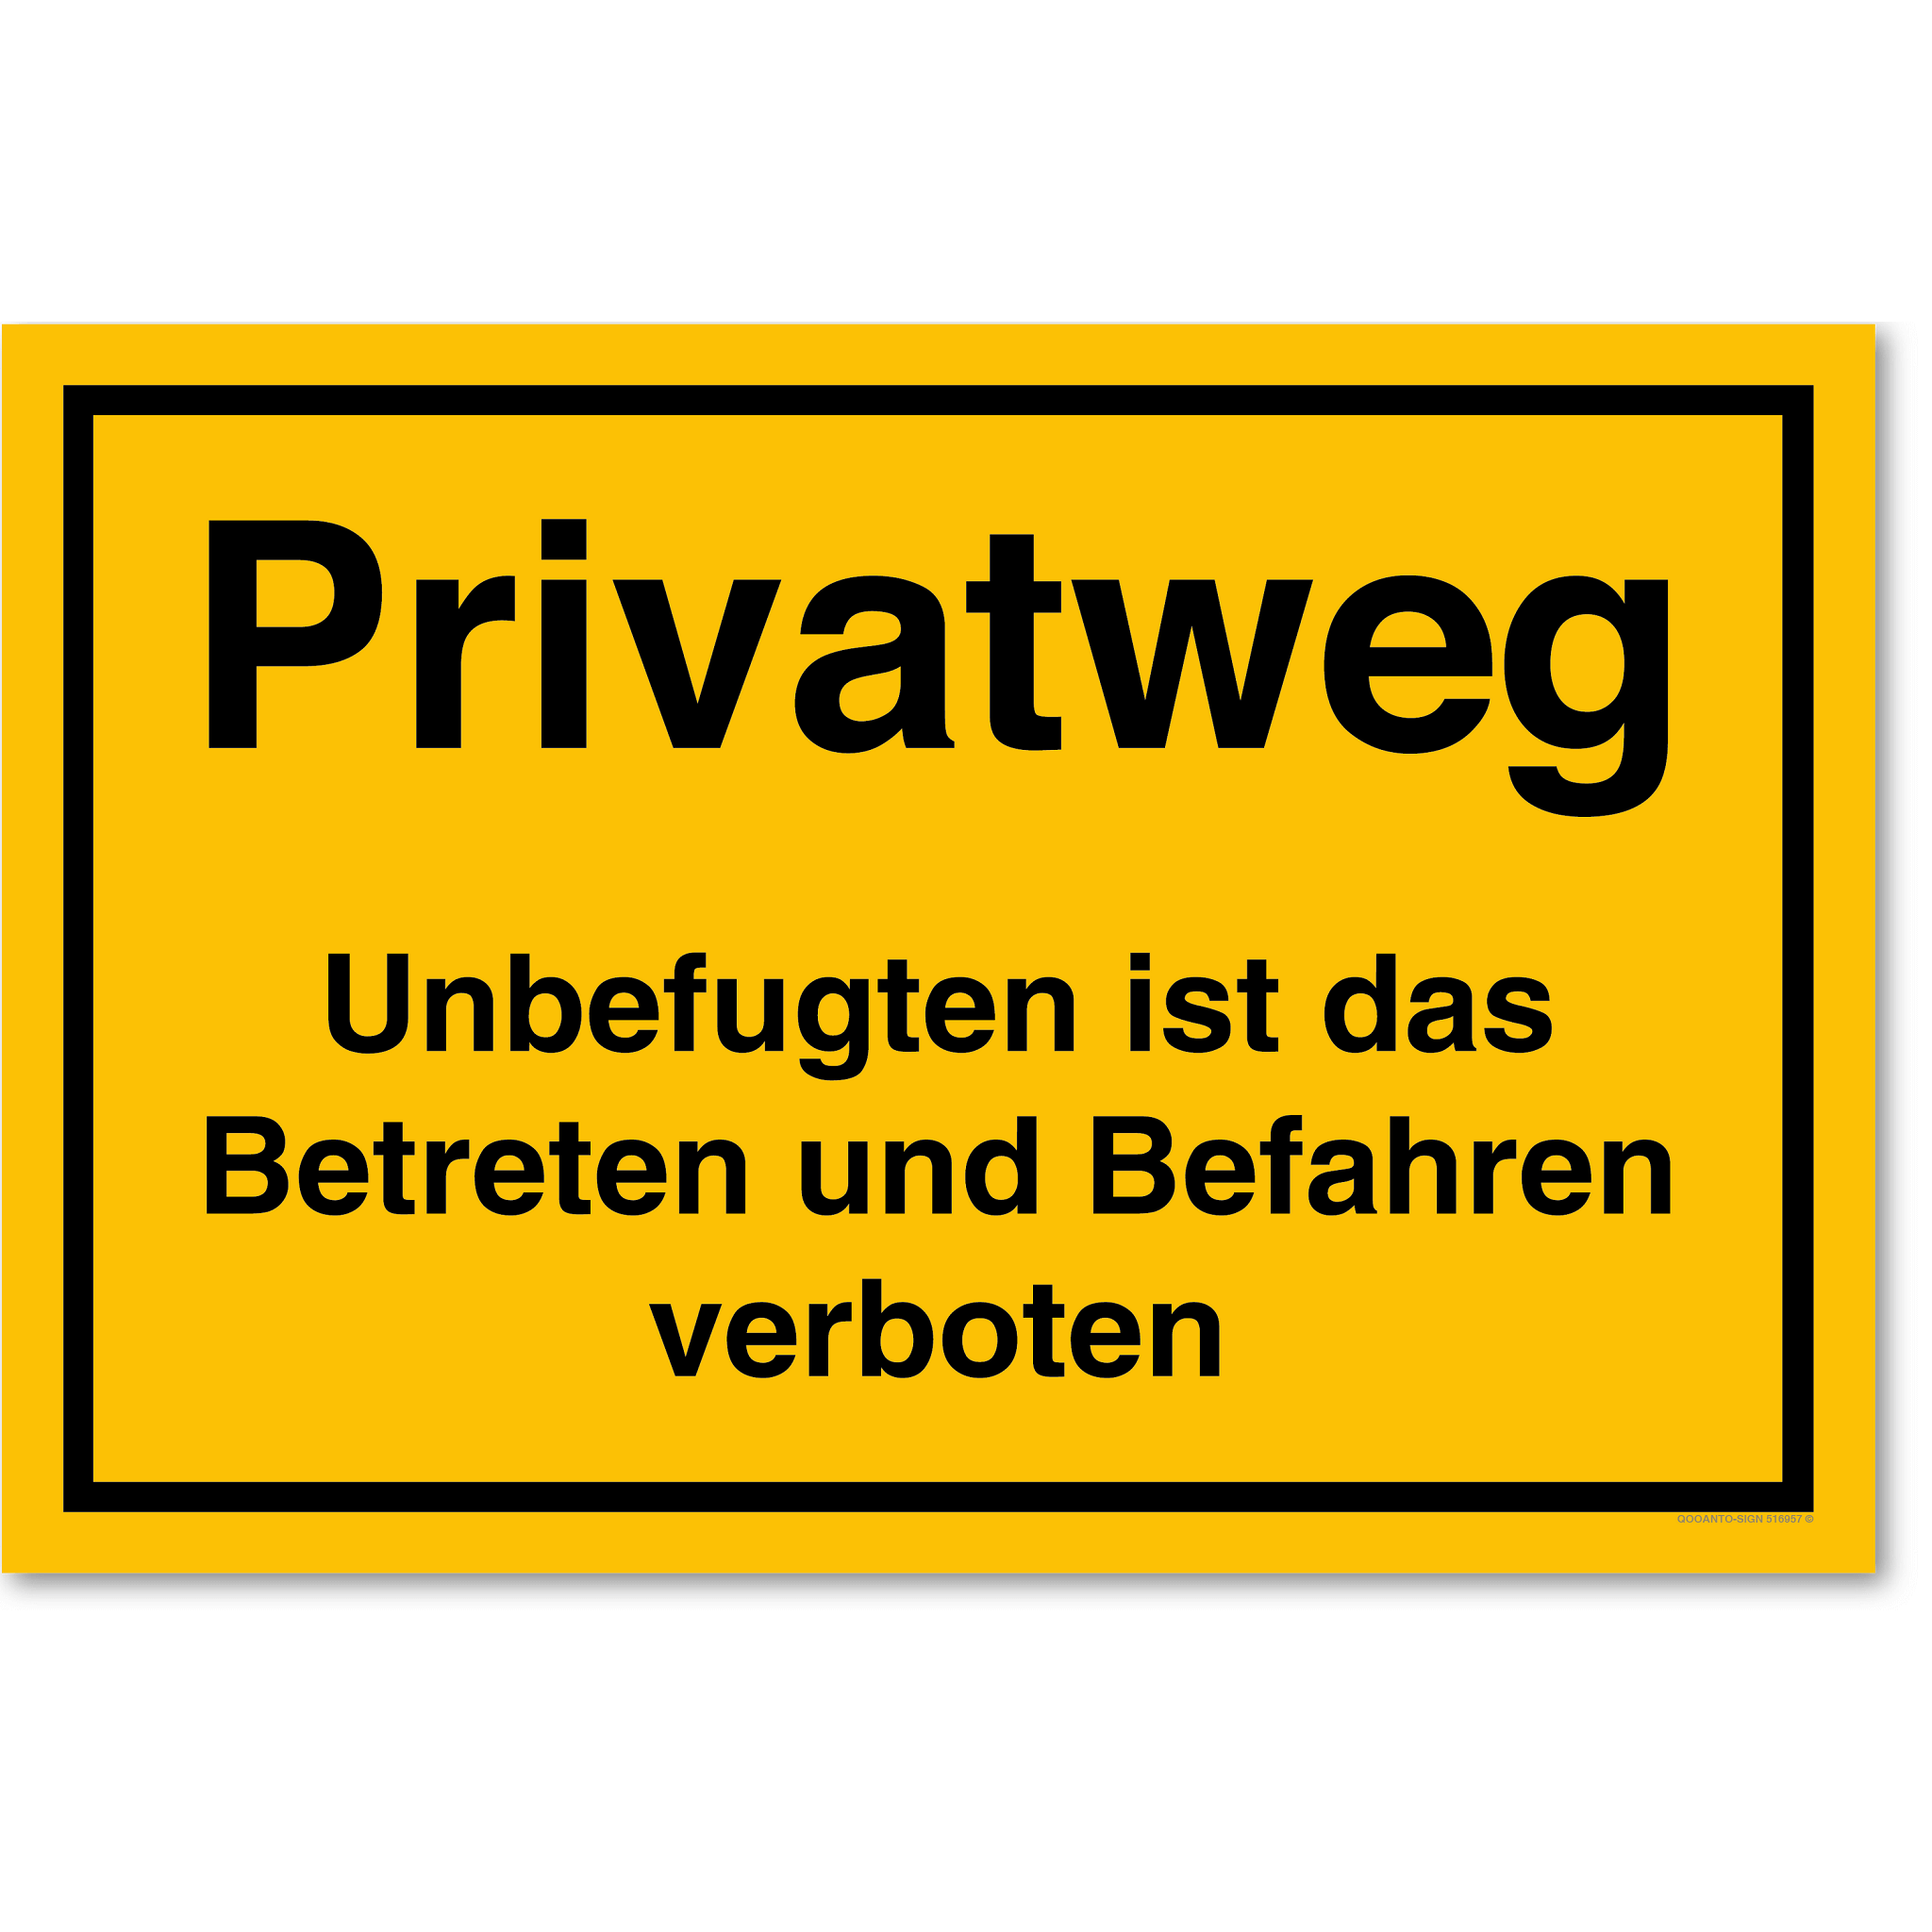 Privatweg Unbefugten ist das Betreten und Befahren verboten, gelb, Schild oder Aufkleber